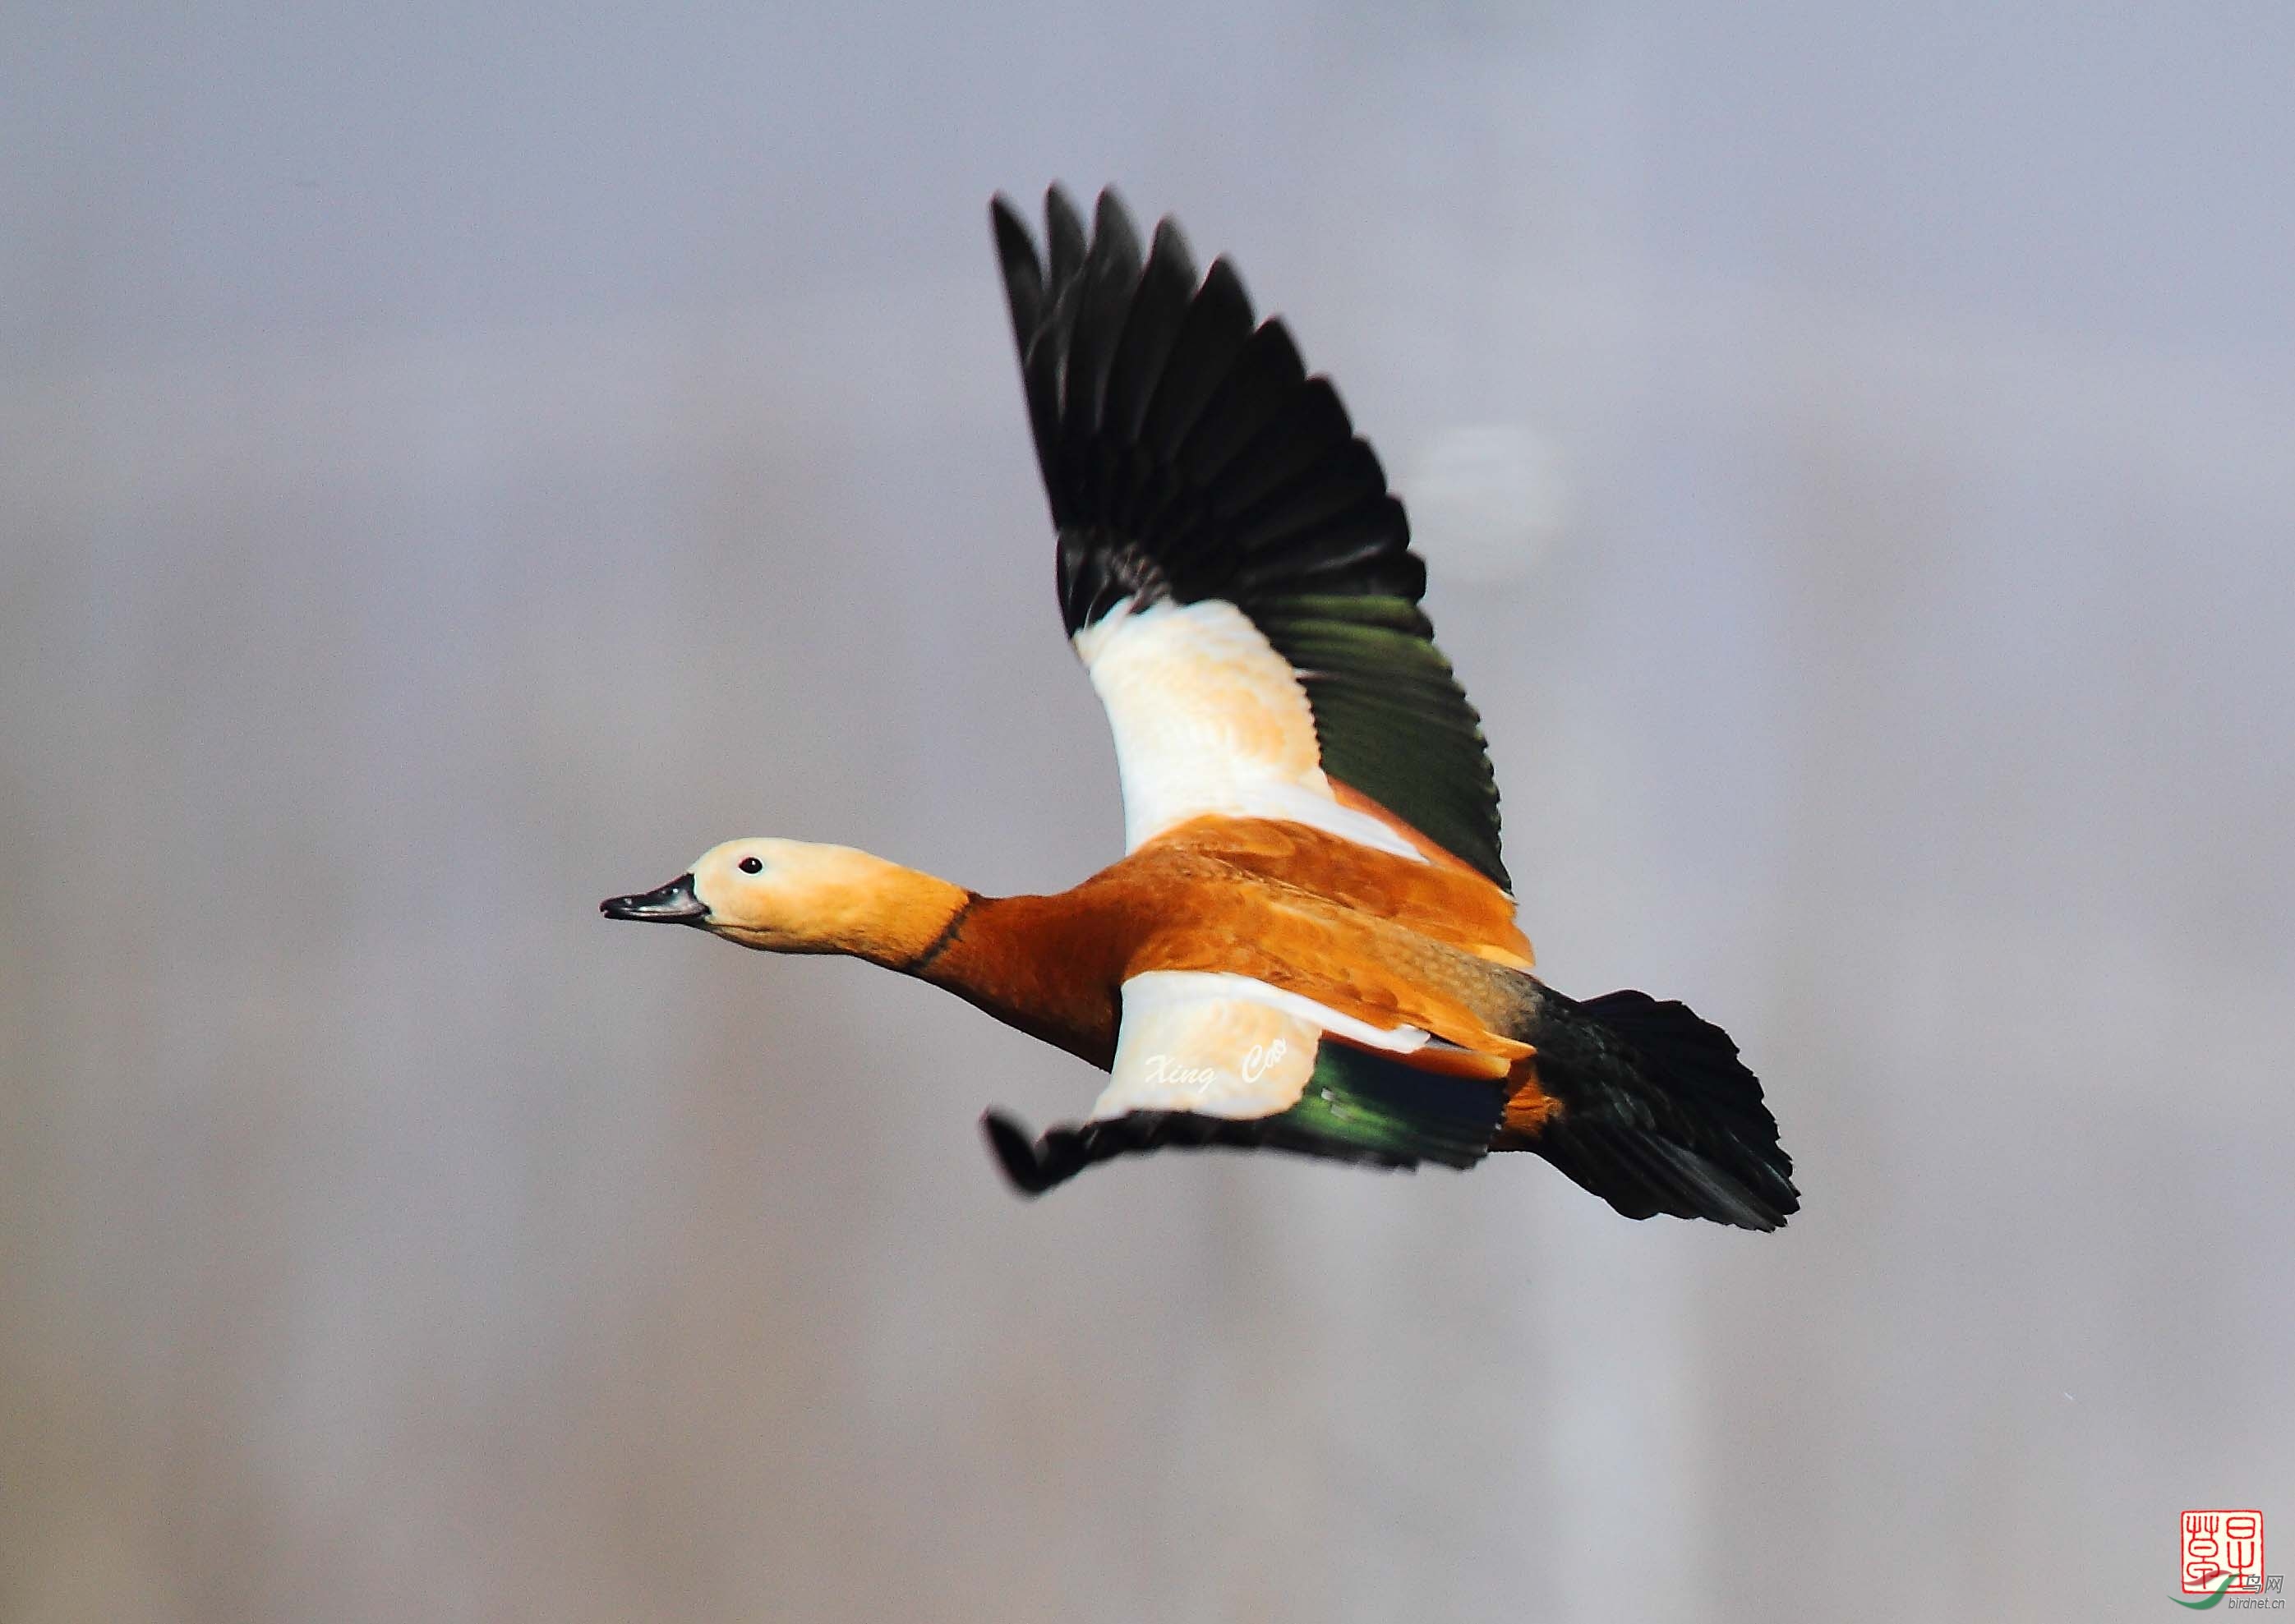 冶河湿地的野生鸟赤麻鸭